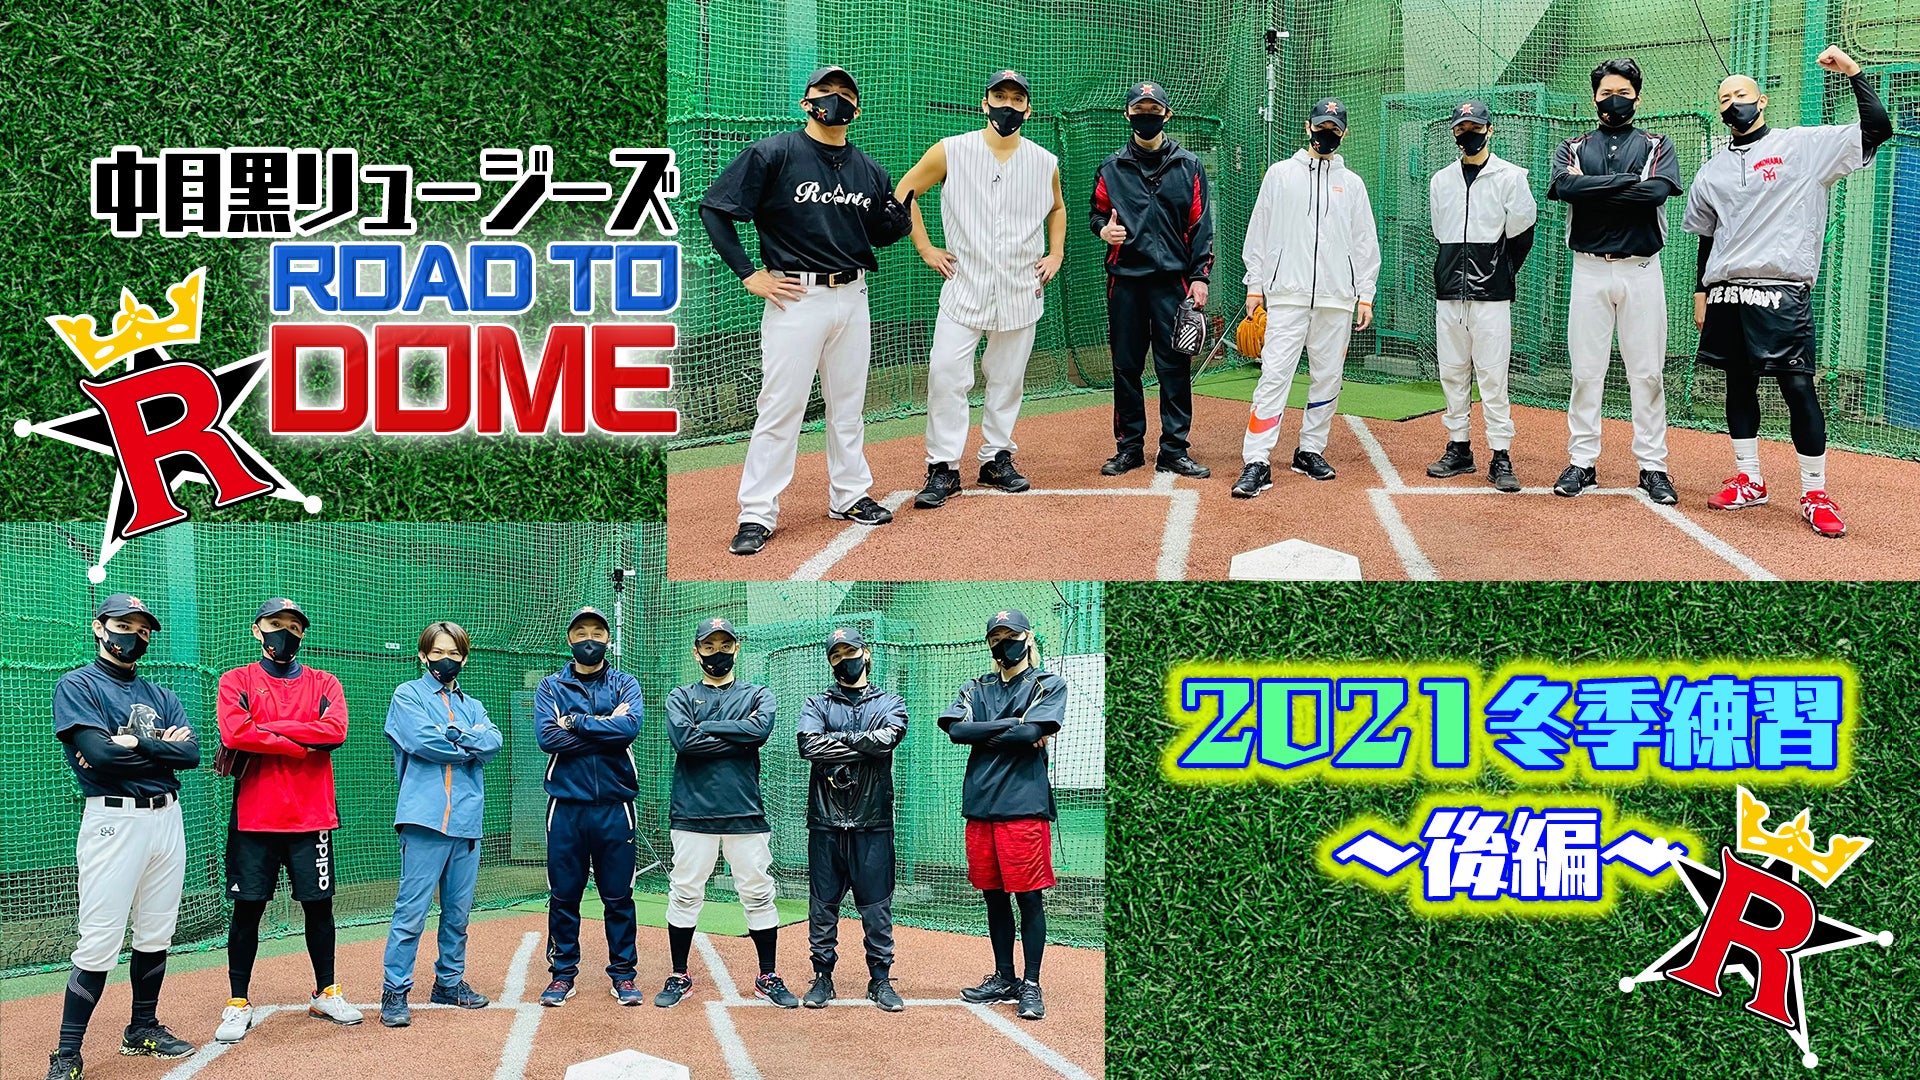 【中目黒リュージーズ】ROAD TO DOME!! 〜2021冬季練習・後編〜 2021/5/15(土)